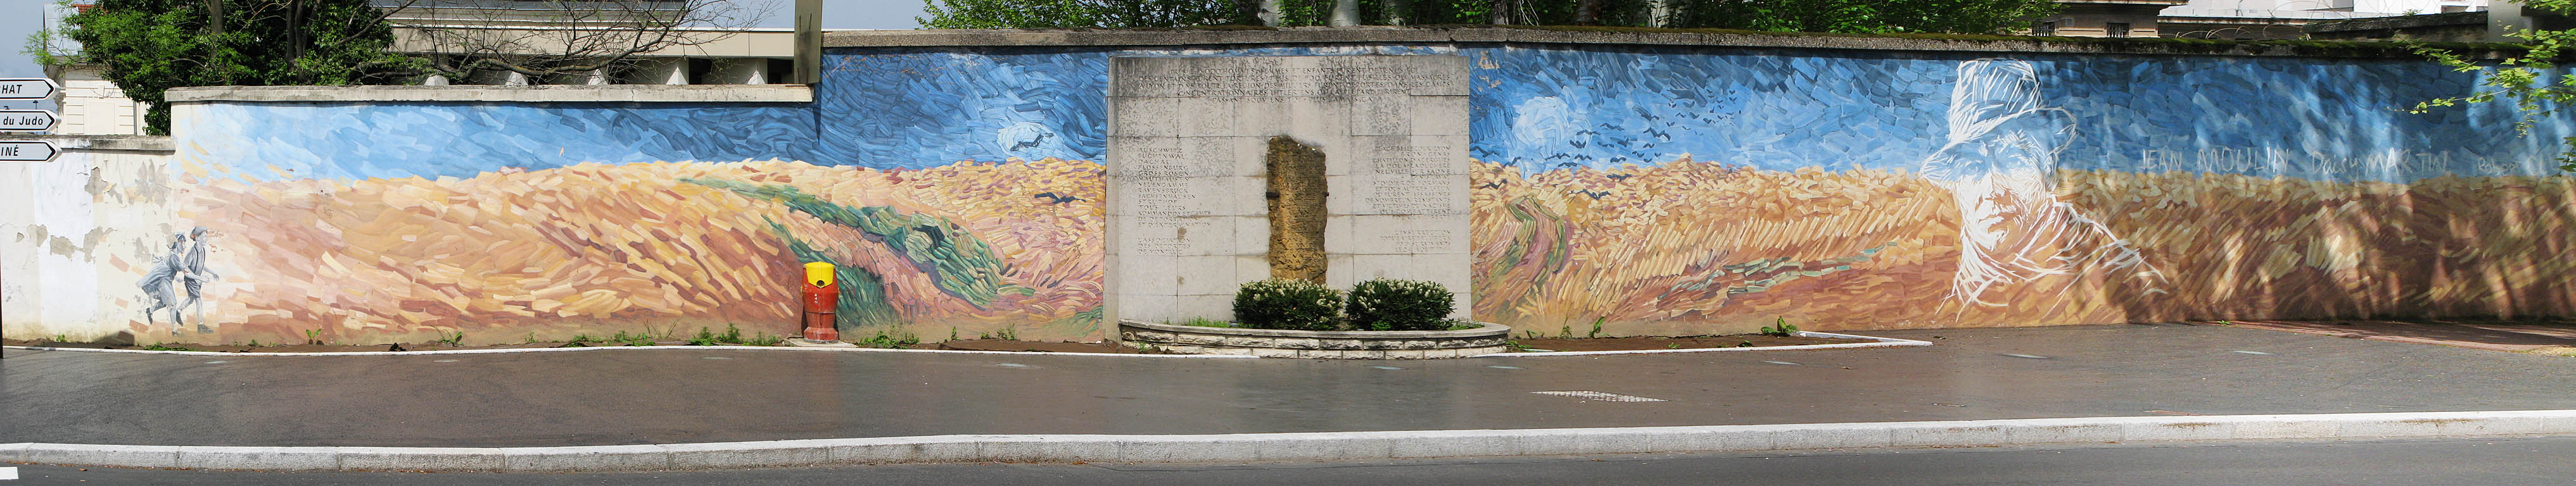 Fresque de Montluc - Jean Moulin rue du Dauphiné Lyon 3ème  par Cité de la Création 1999 - 800 m²